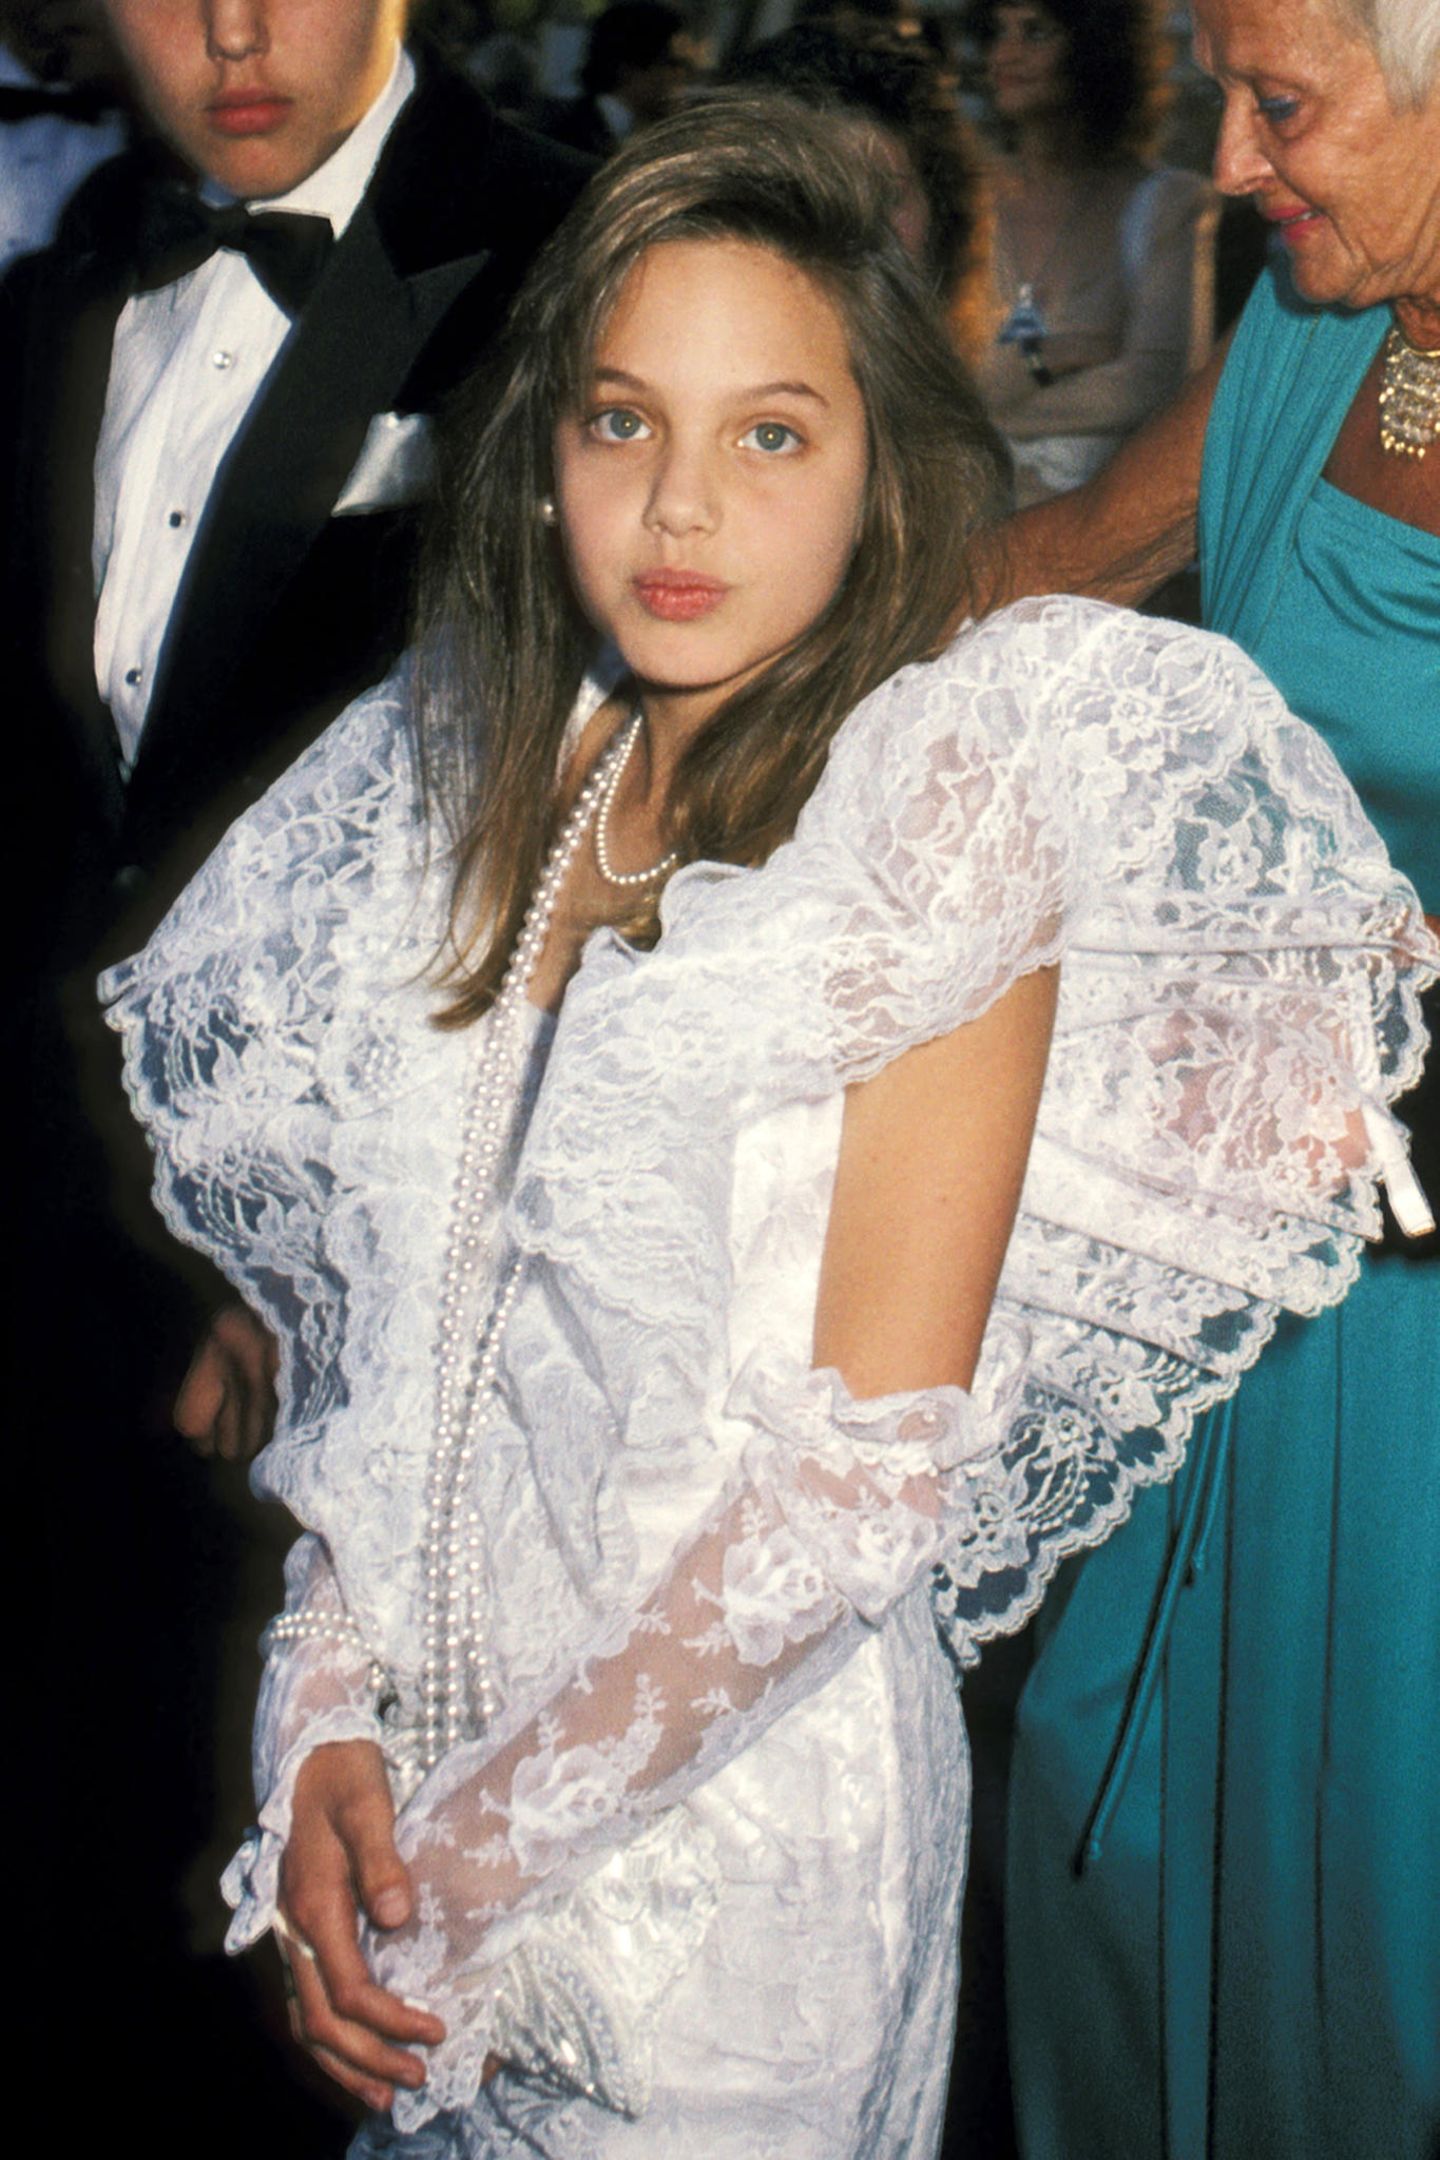 1986 Als Tochter des Schauspielerpaars Jon Voight und Marcheline Bertrand wächst Angelina Jolie mit dem Glamour und Trubel Hollywoods auf. Als niedliche Zehnjährige gibt sie sogar schon ihr Debüt auf dem roten Teppich der Oscars, ganz unschuldig im weißen Spitzenkleid.